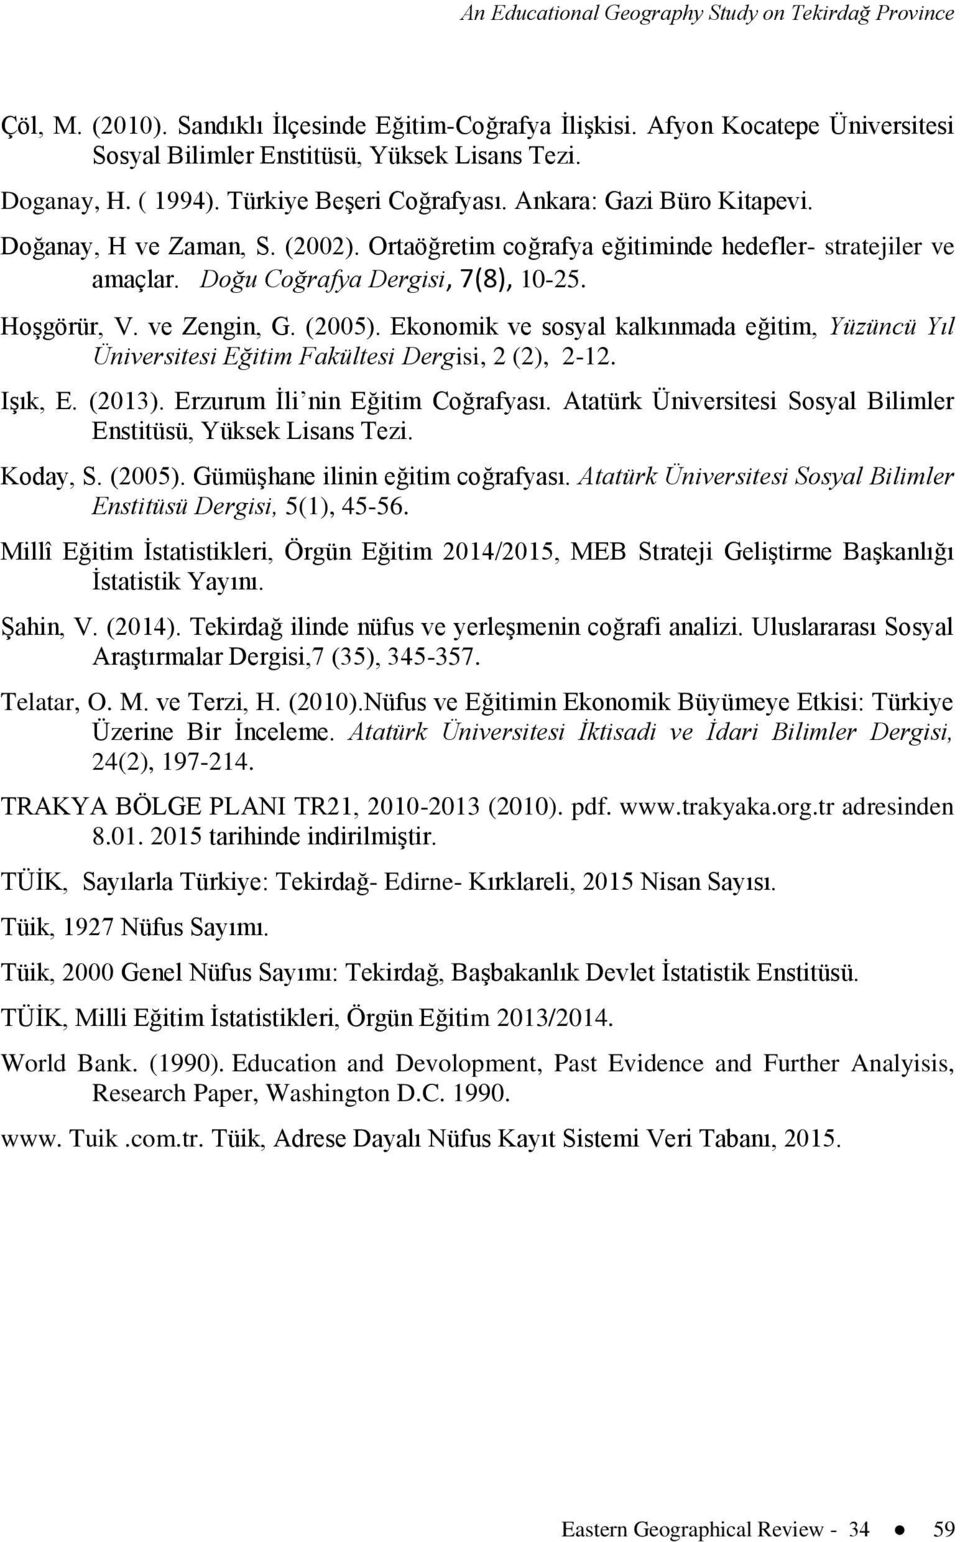 Hoşgörür, V. ve Zengin, G. (2005). Ekonomik ve sosyal kalkınmada eğitim, Yüzüncü Yıl Üniversitesi Eğitim Fakültesi Dergisi, 2 (2), 2-12. Işık, E. (2013). Erzurum İli nin Eğitim Coğrafyası.